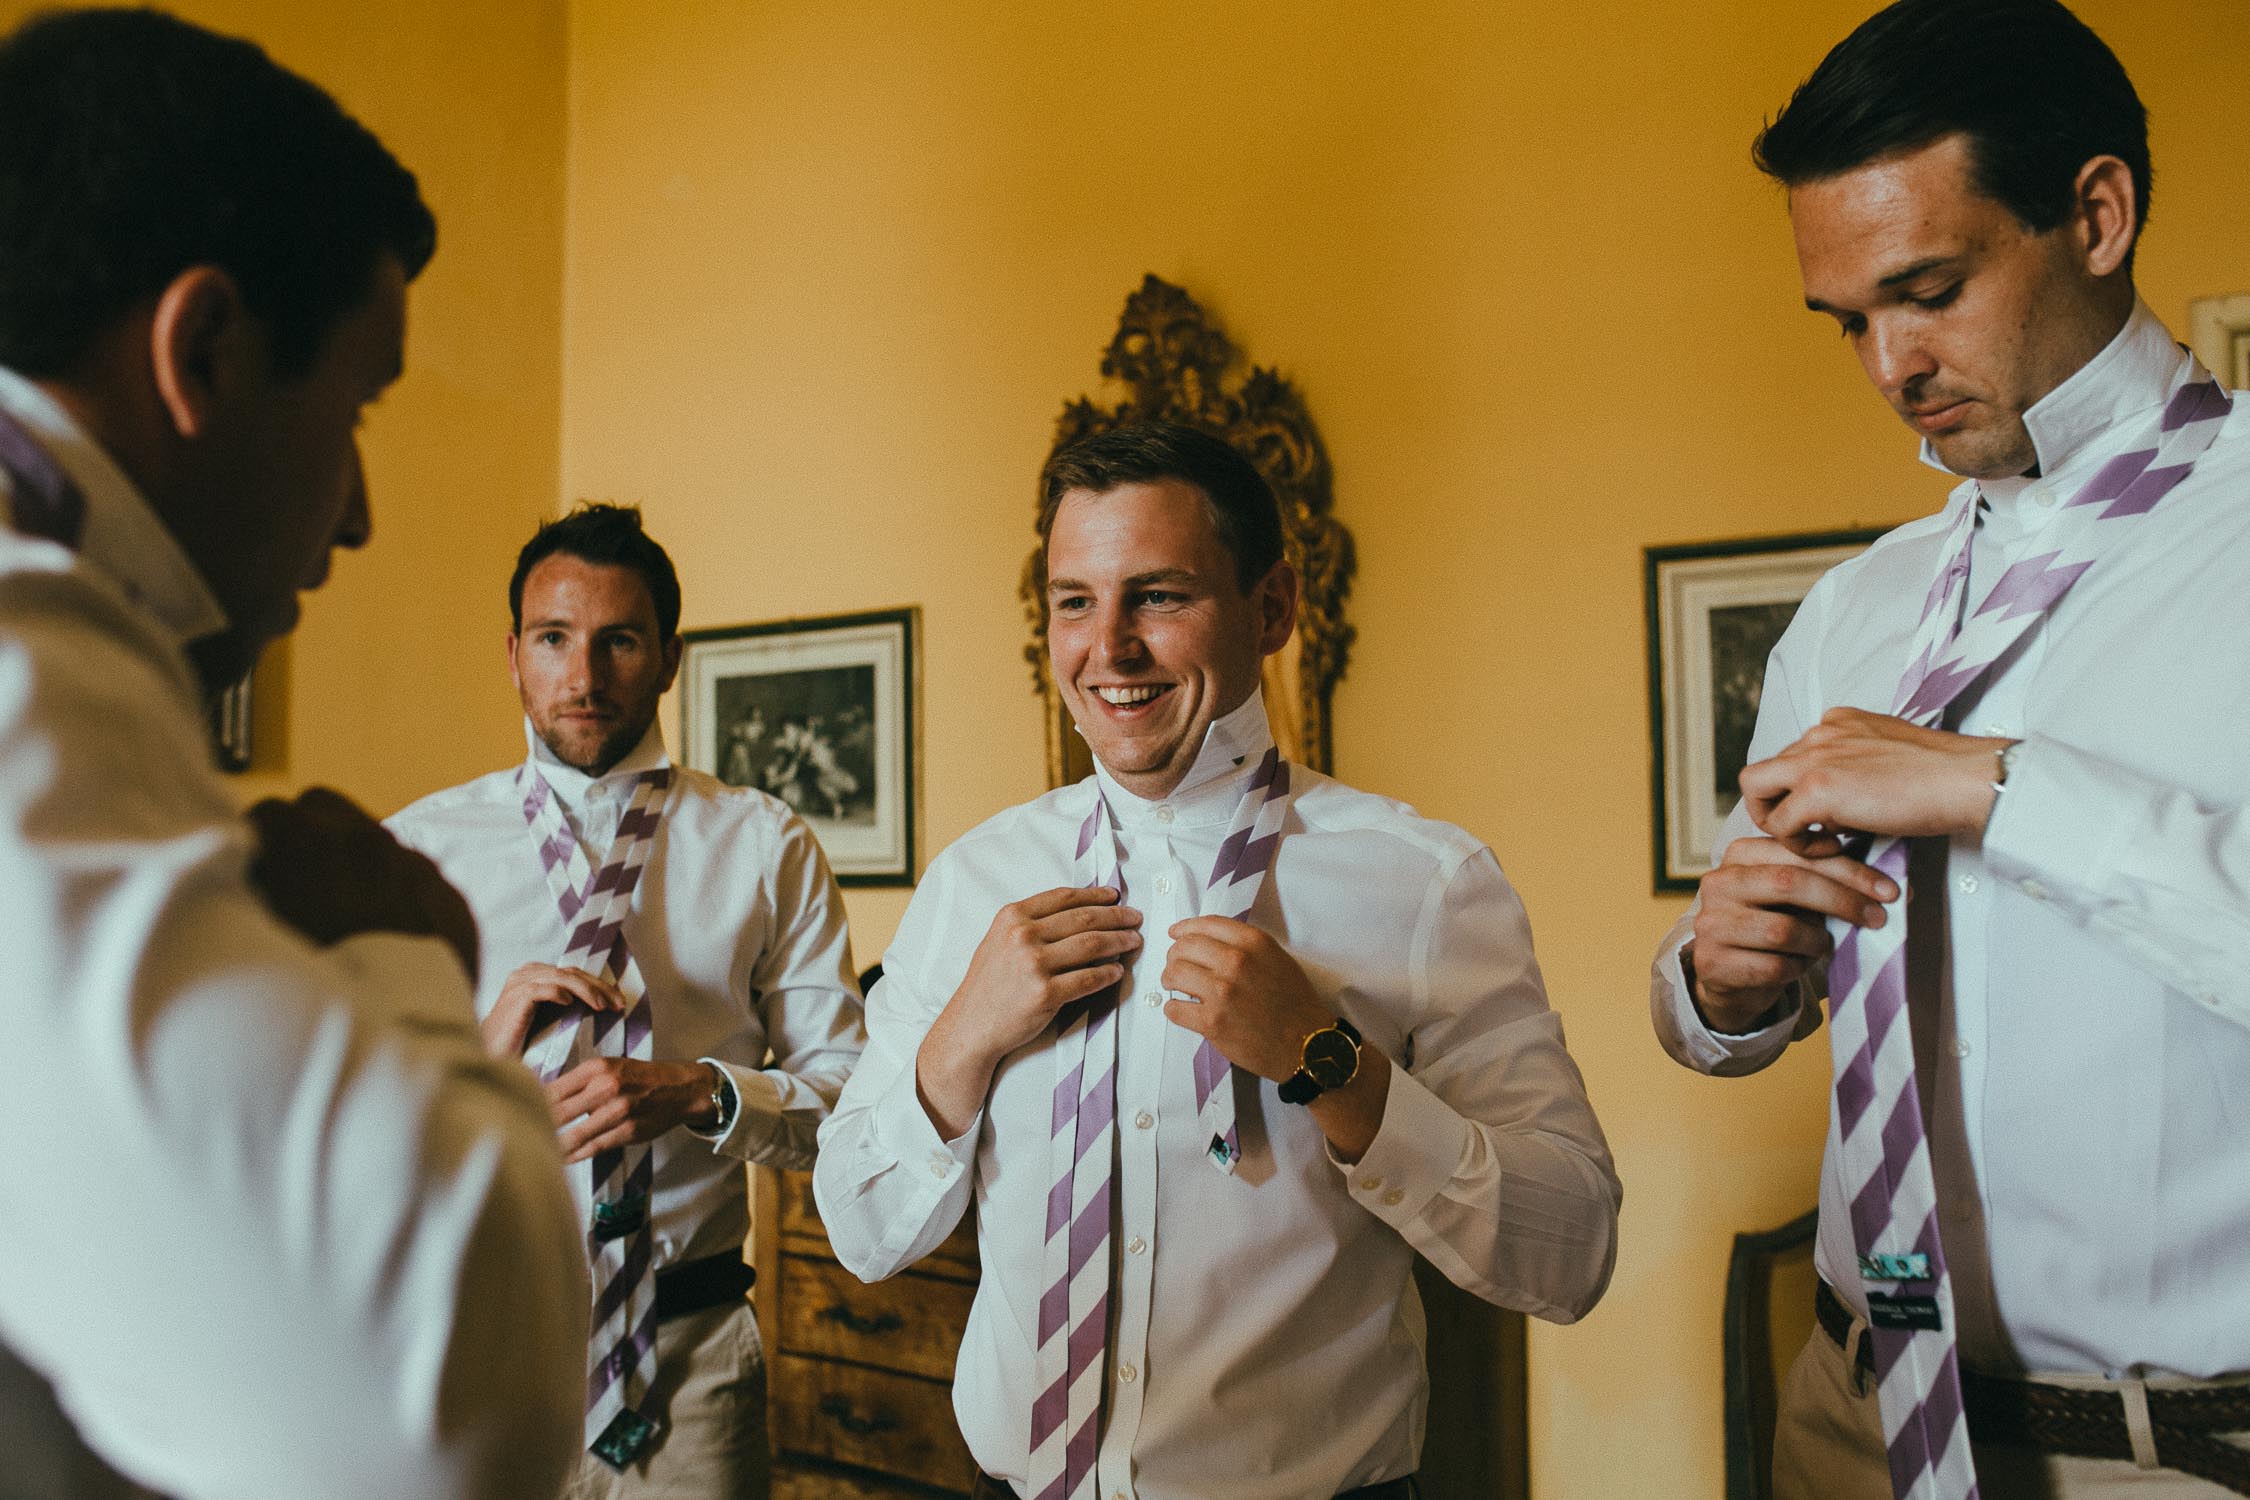 destiantion-wedding-in-tuscany-getting-ready (19).jpg